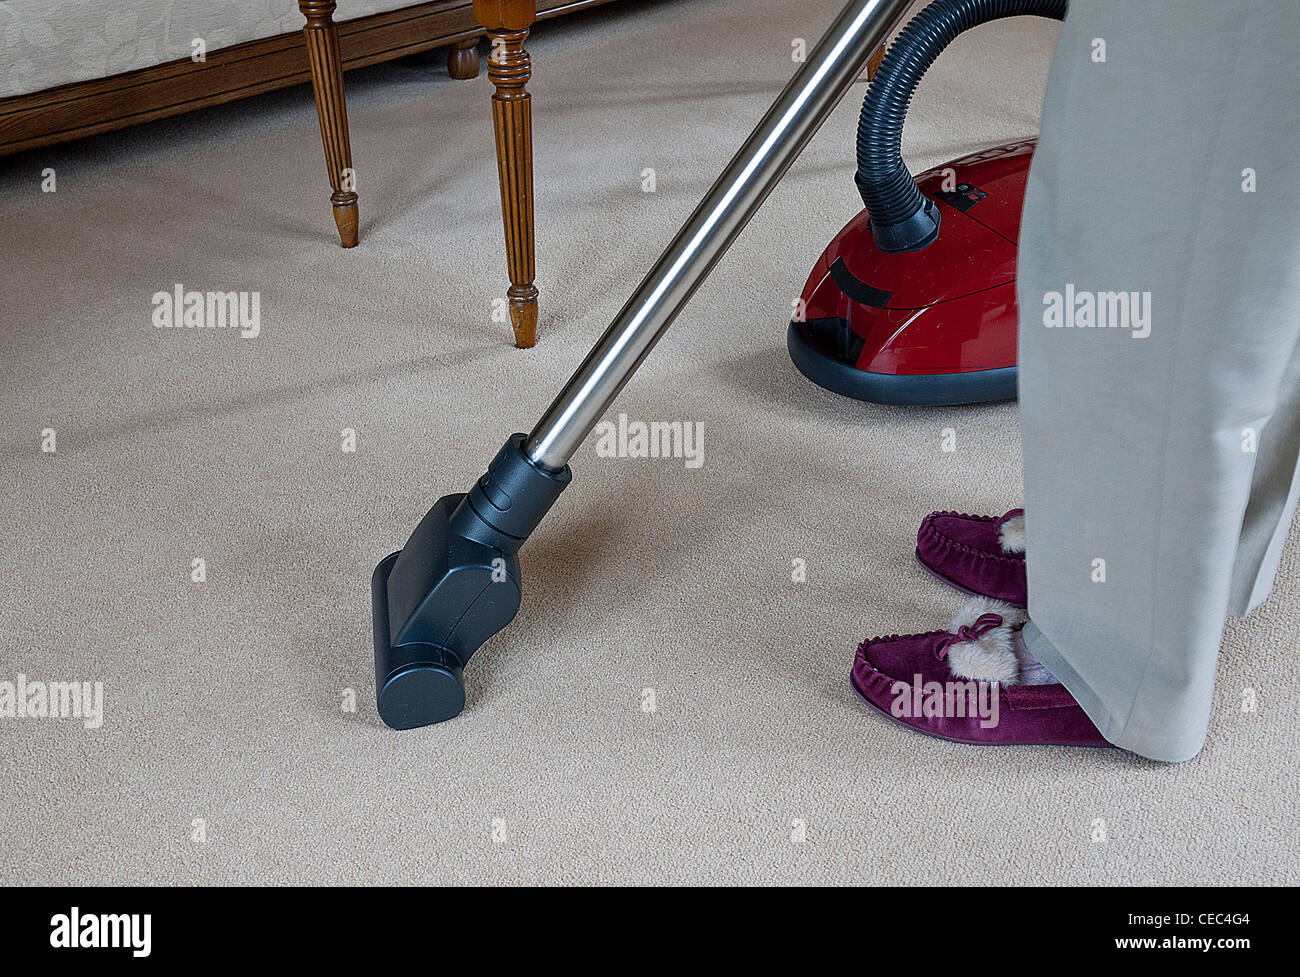 Signora a pulire un tappeto utilizzando un cilindro modello vac, UK. Foto Stock